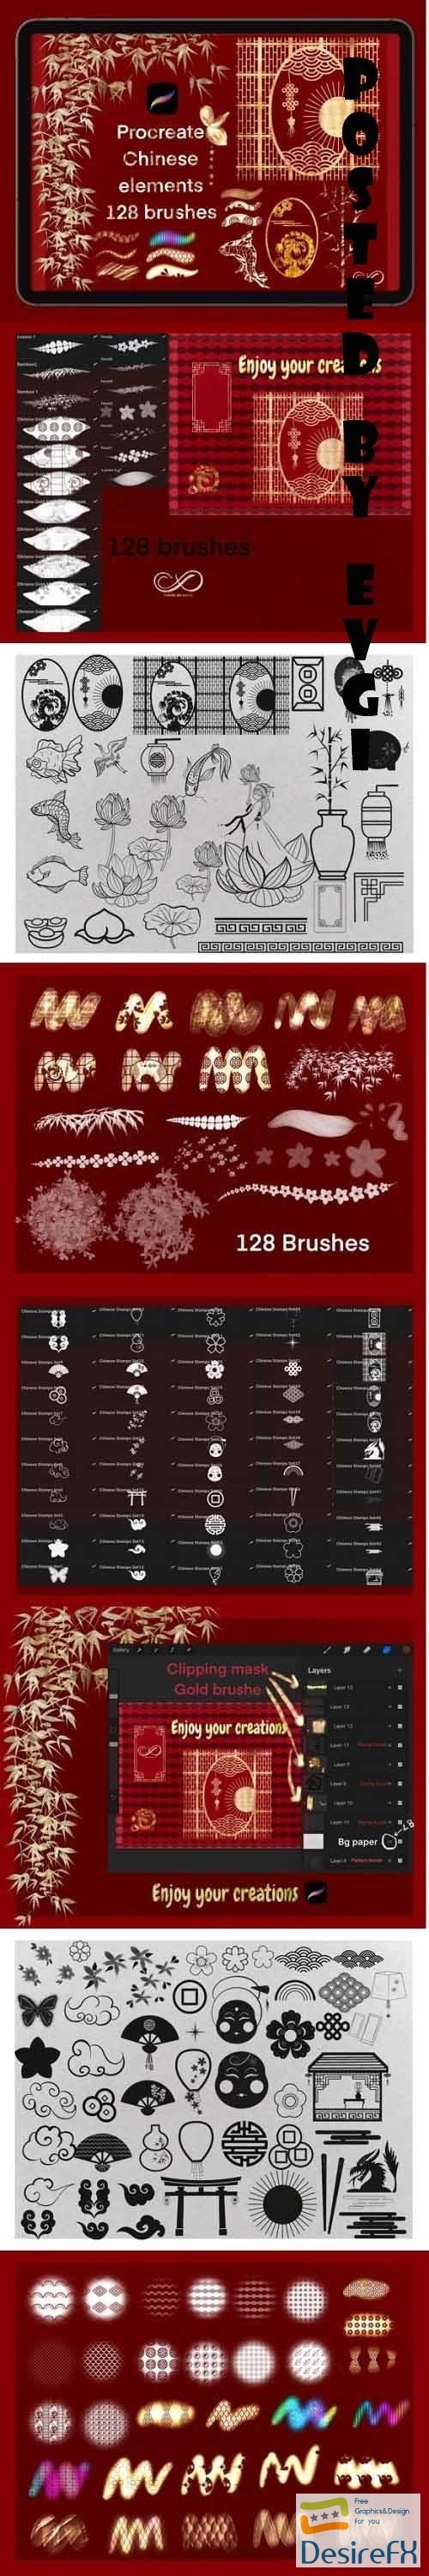 Procreate Chinese Elements /128 Brushes